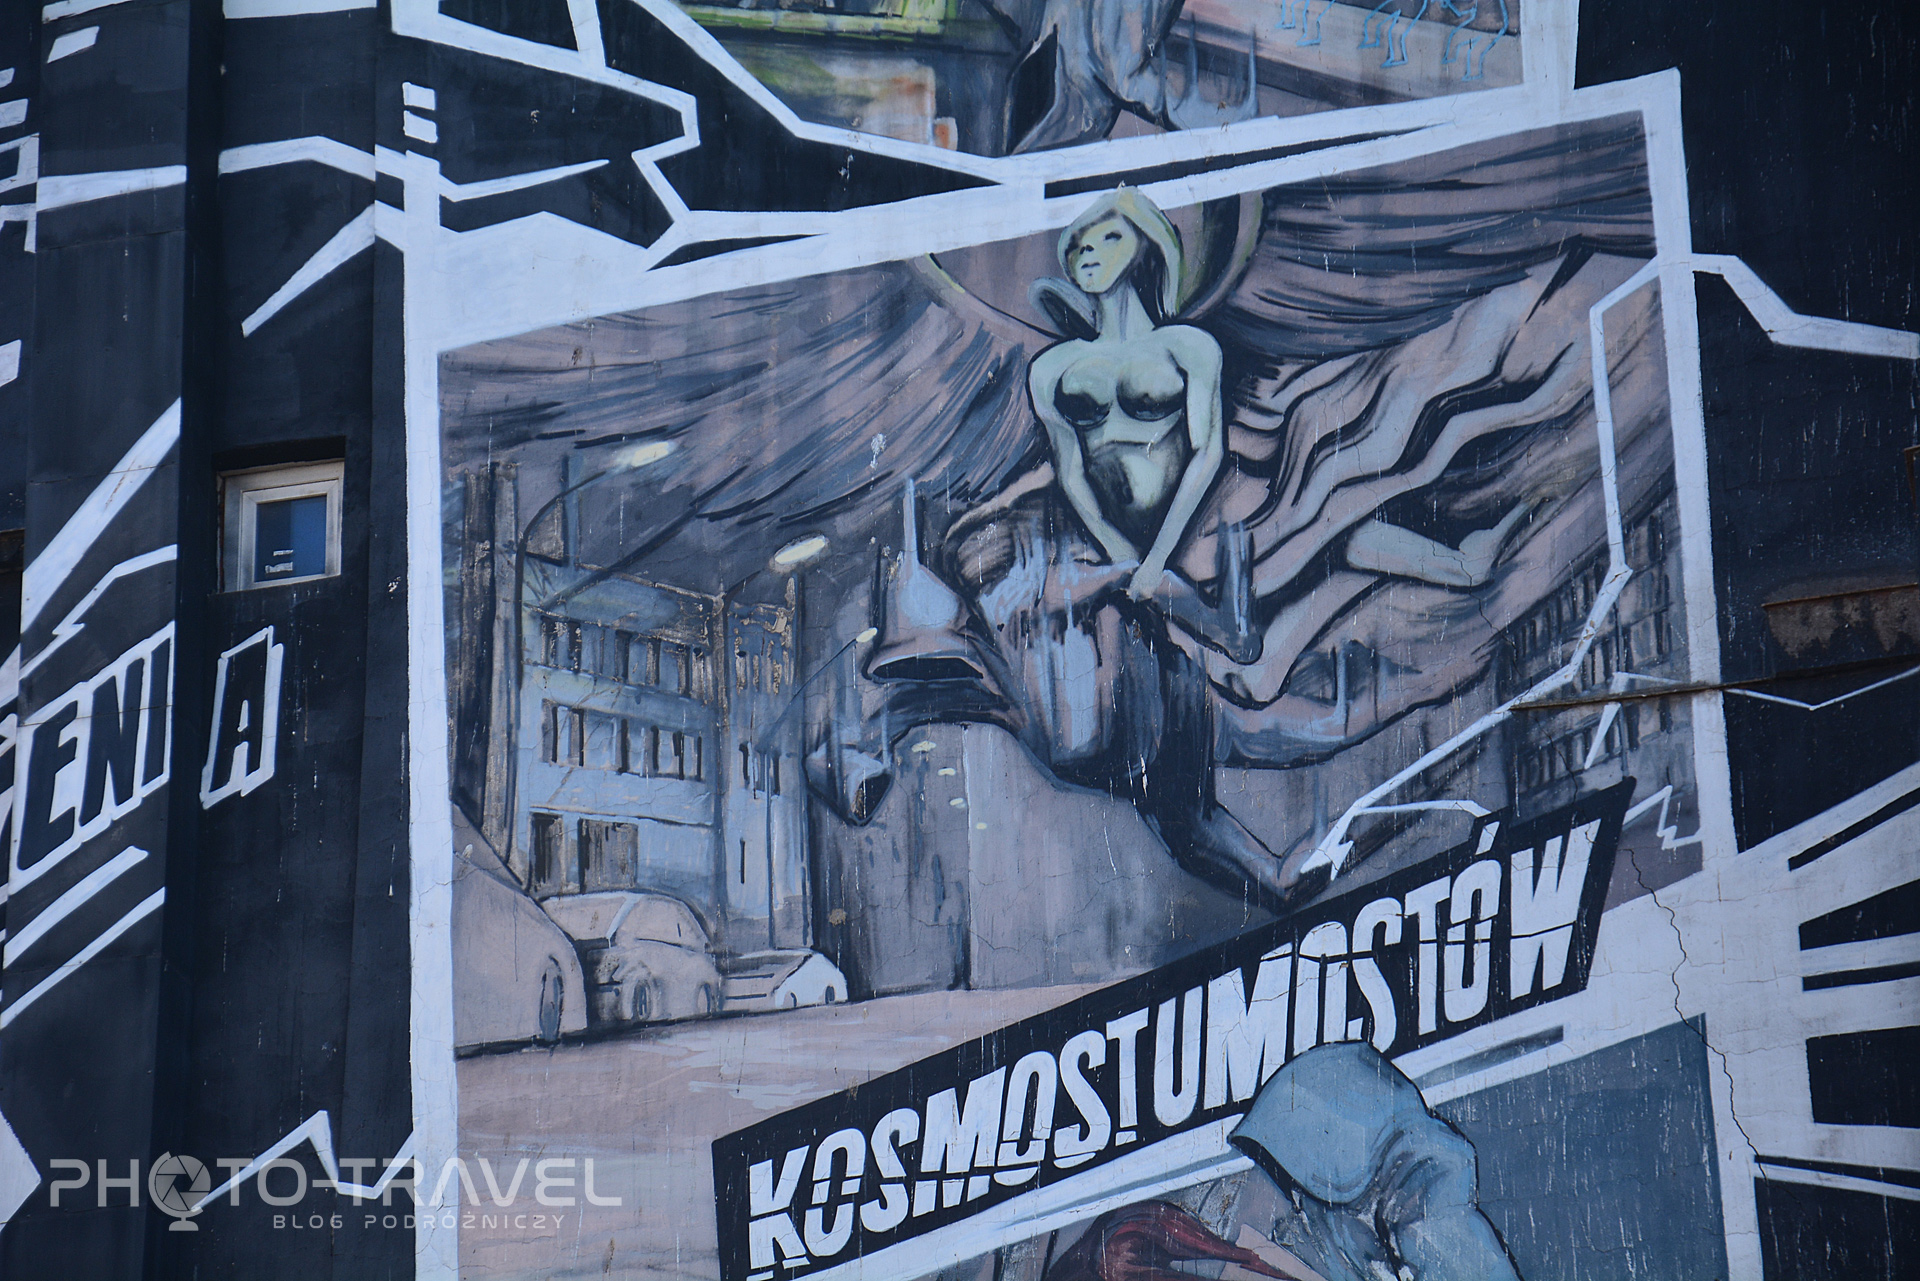 Kosmostumostów - mural obok arsenału we Wrocławiu - murale Wrocław